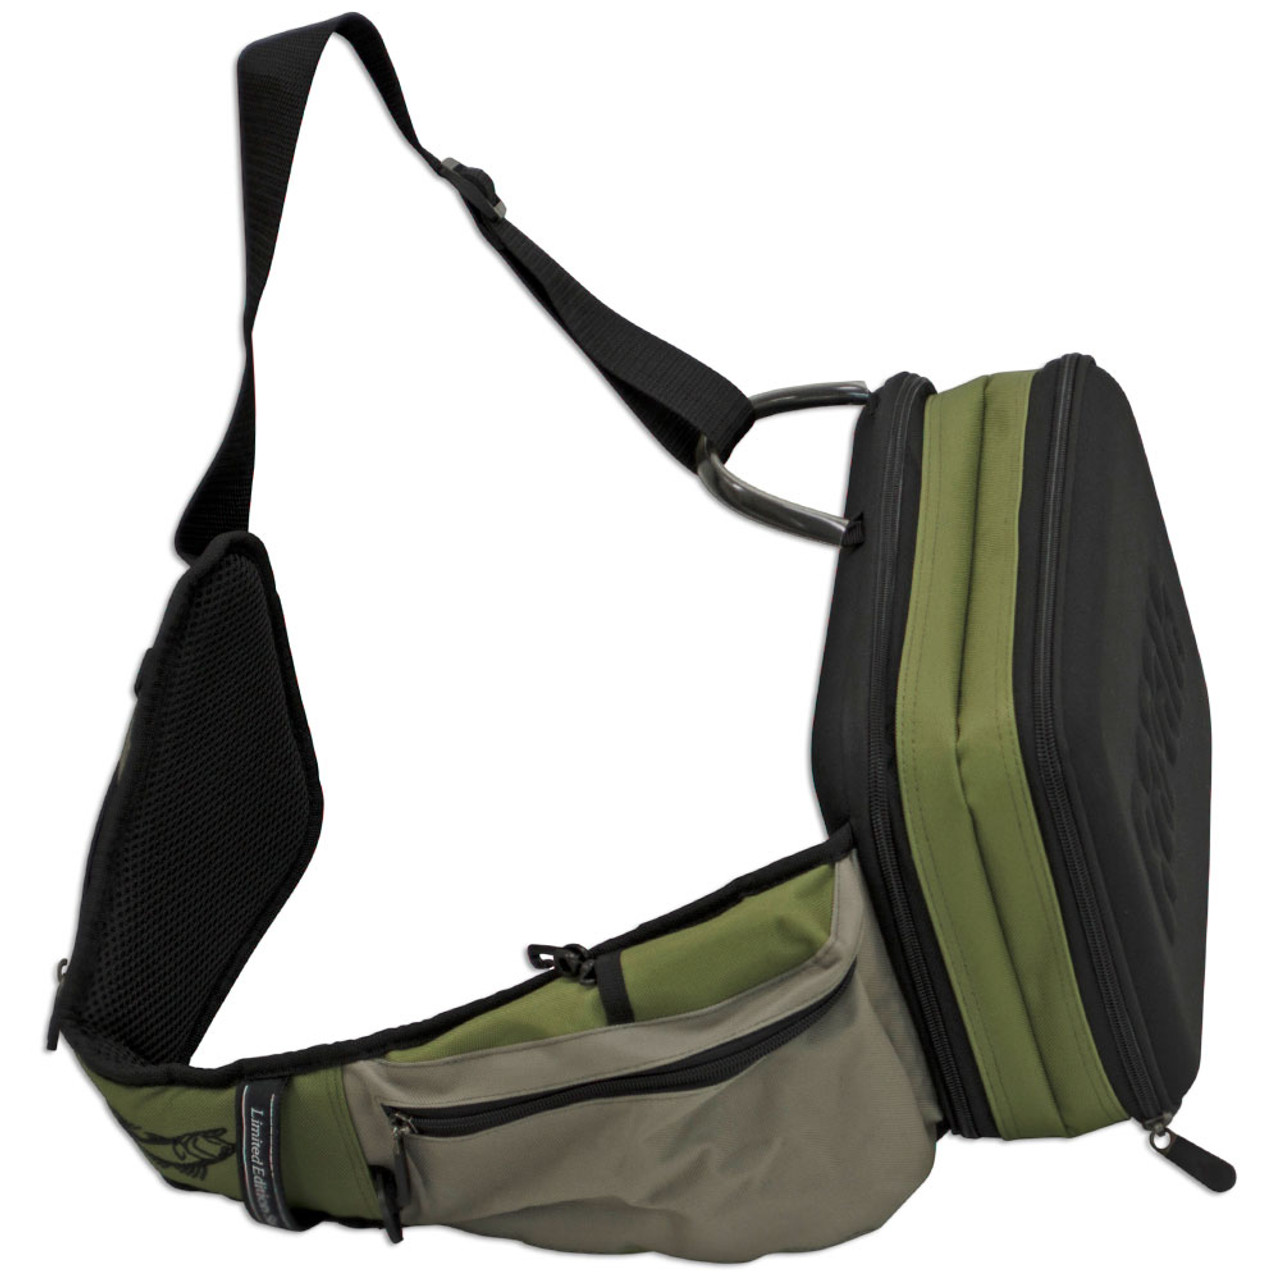 Rapala Sling bag - Tackle Storage Bag Standard or Magnum Size